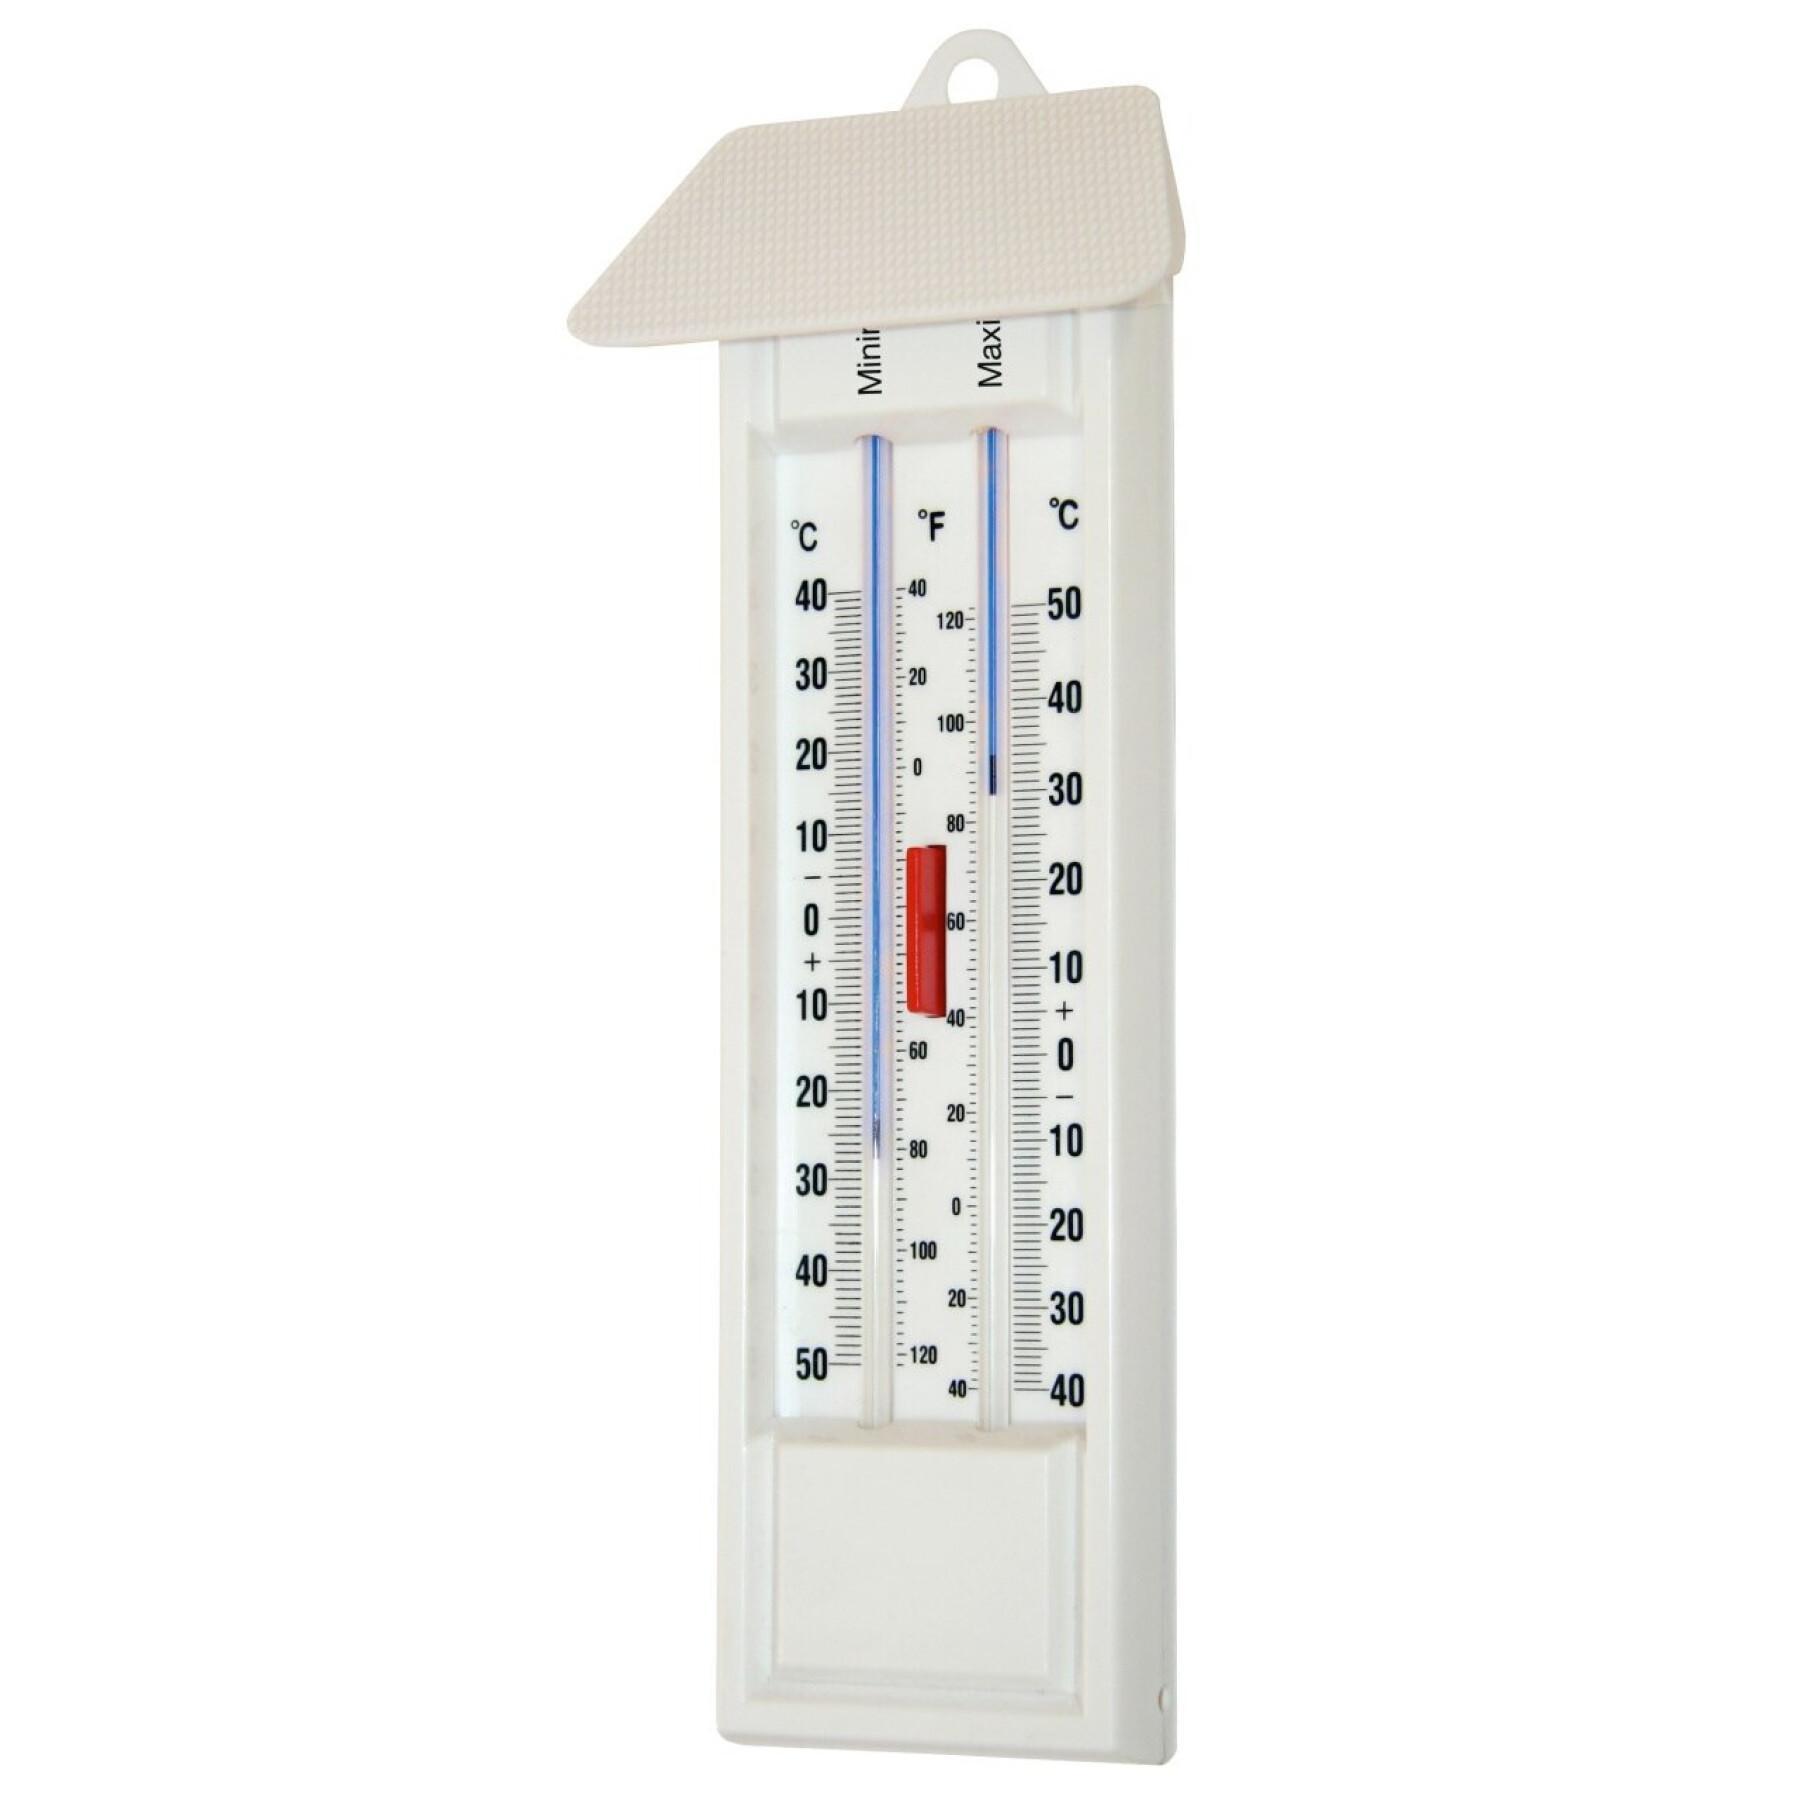 Maxi-mini thermometer Kerbl